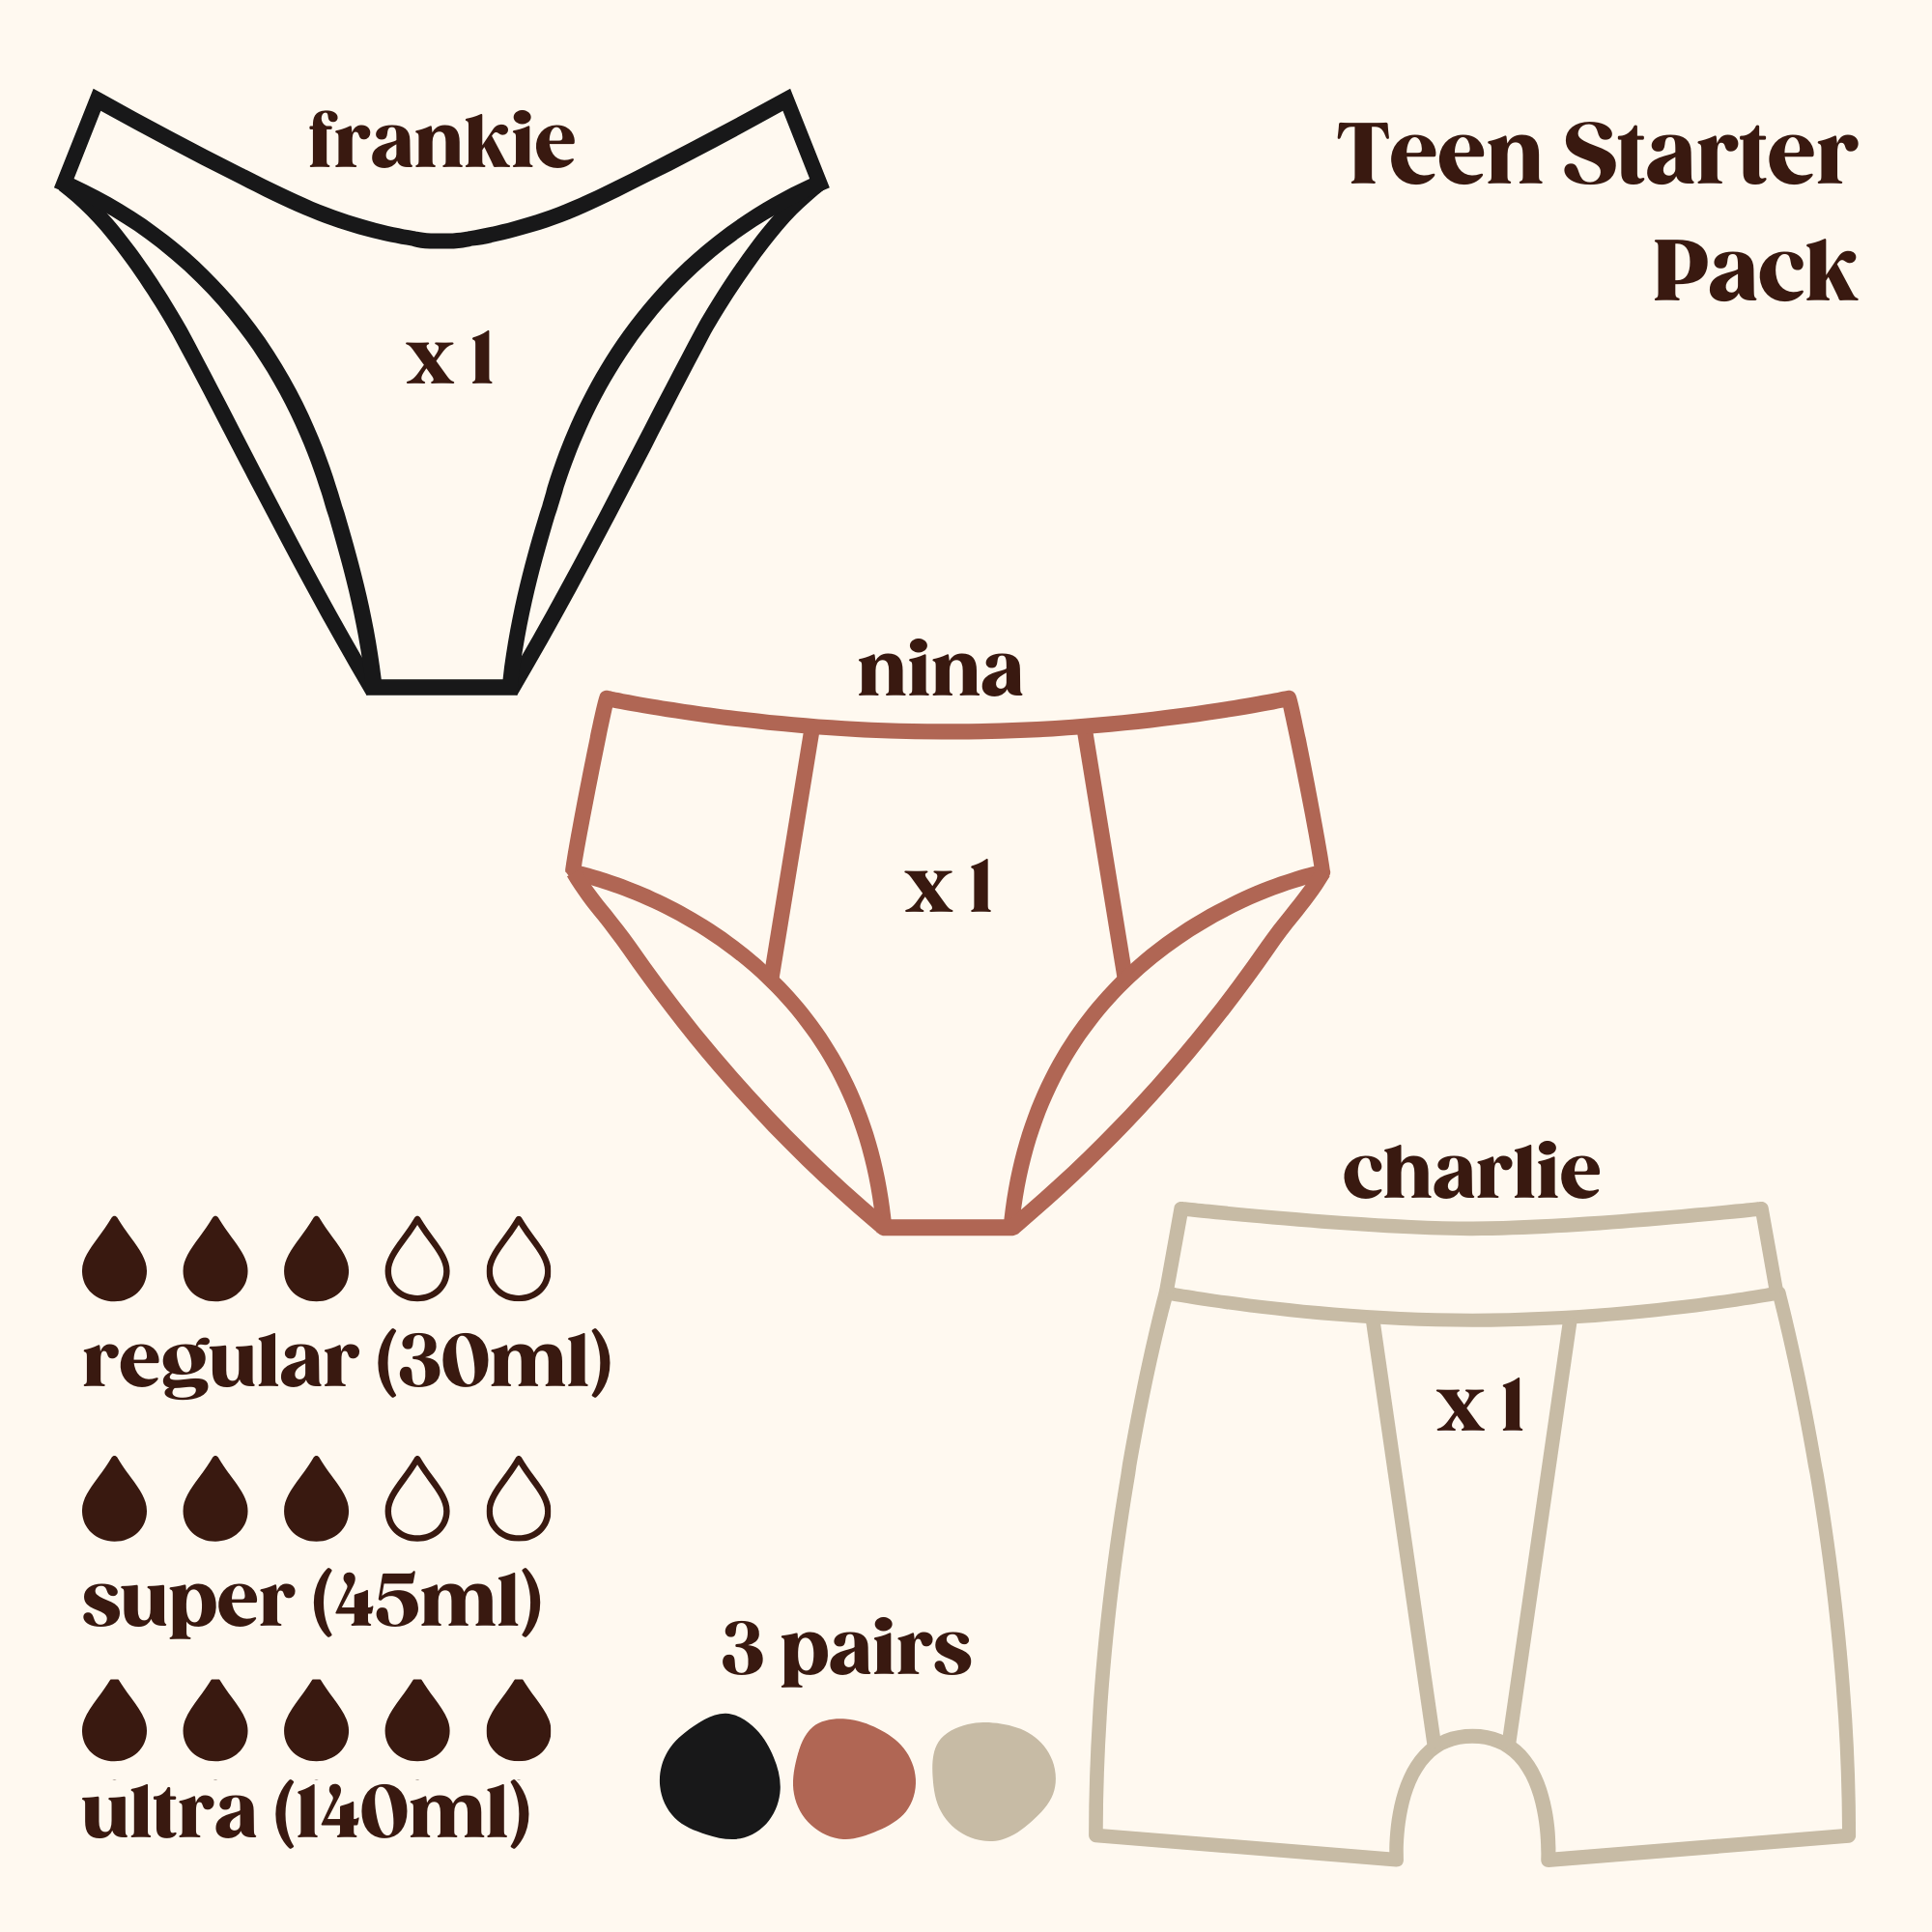 Teen Starter Pack (Frankie, Nina, Charlie)